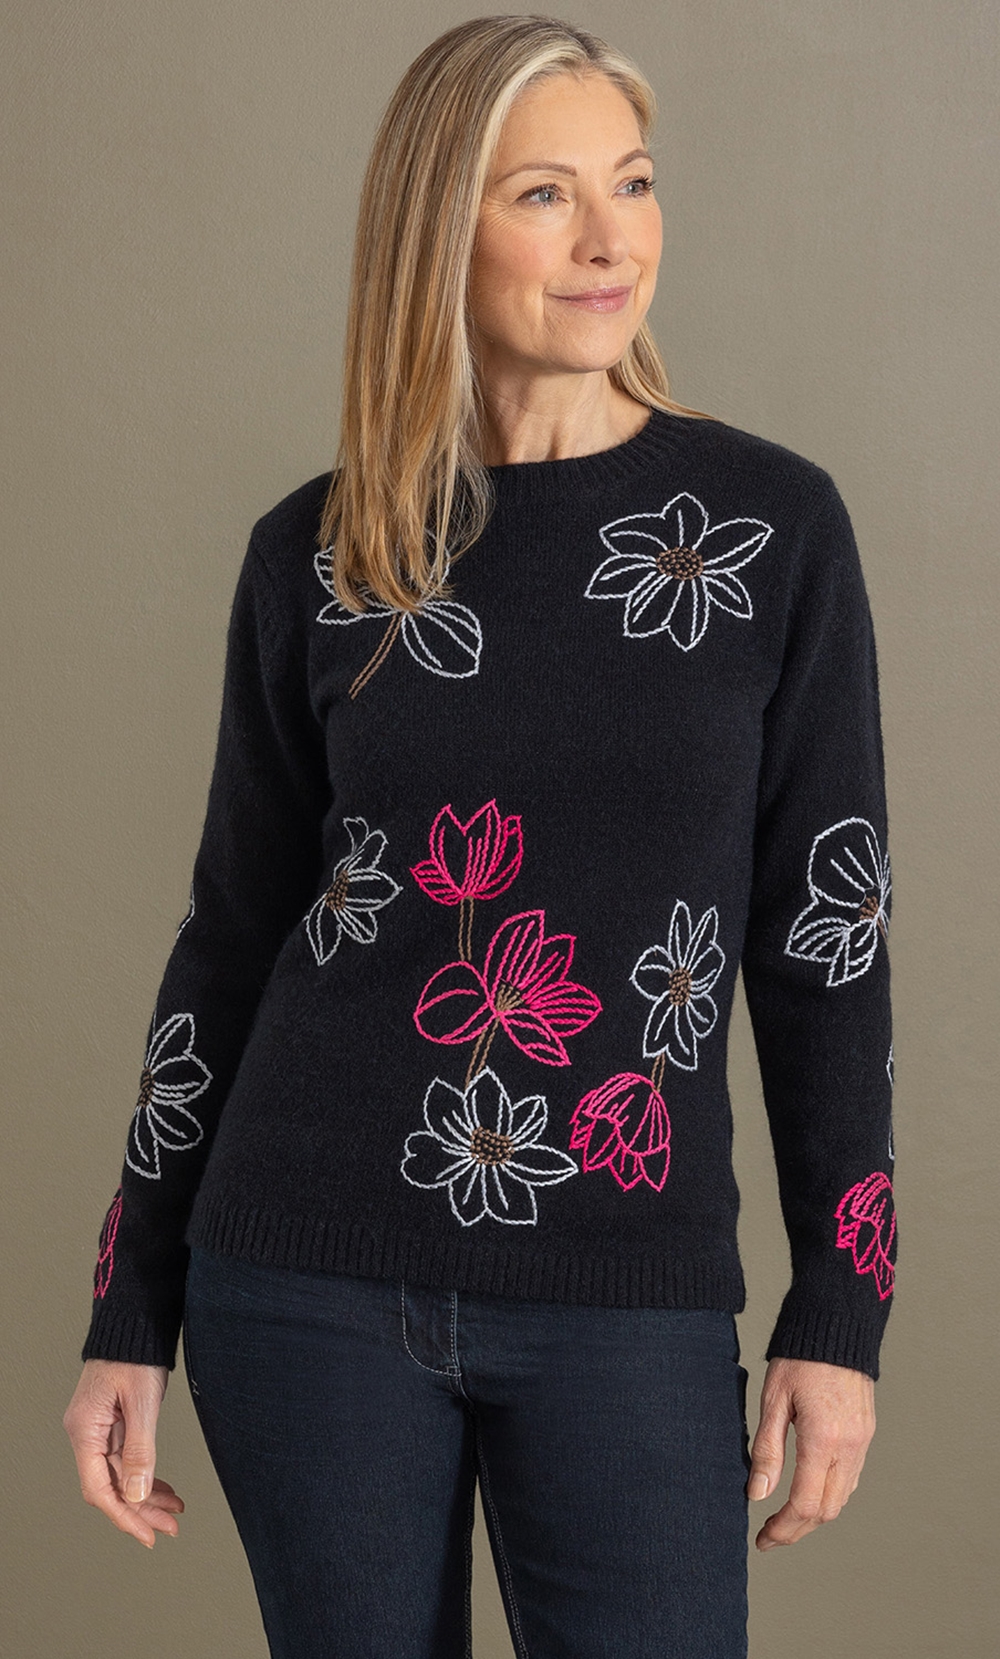 Brands - Anna Rose Anna Rose Floral Embroidered Jumper Black/Pink Women’s